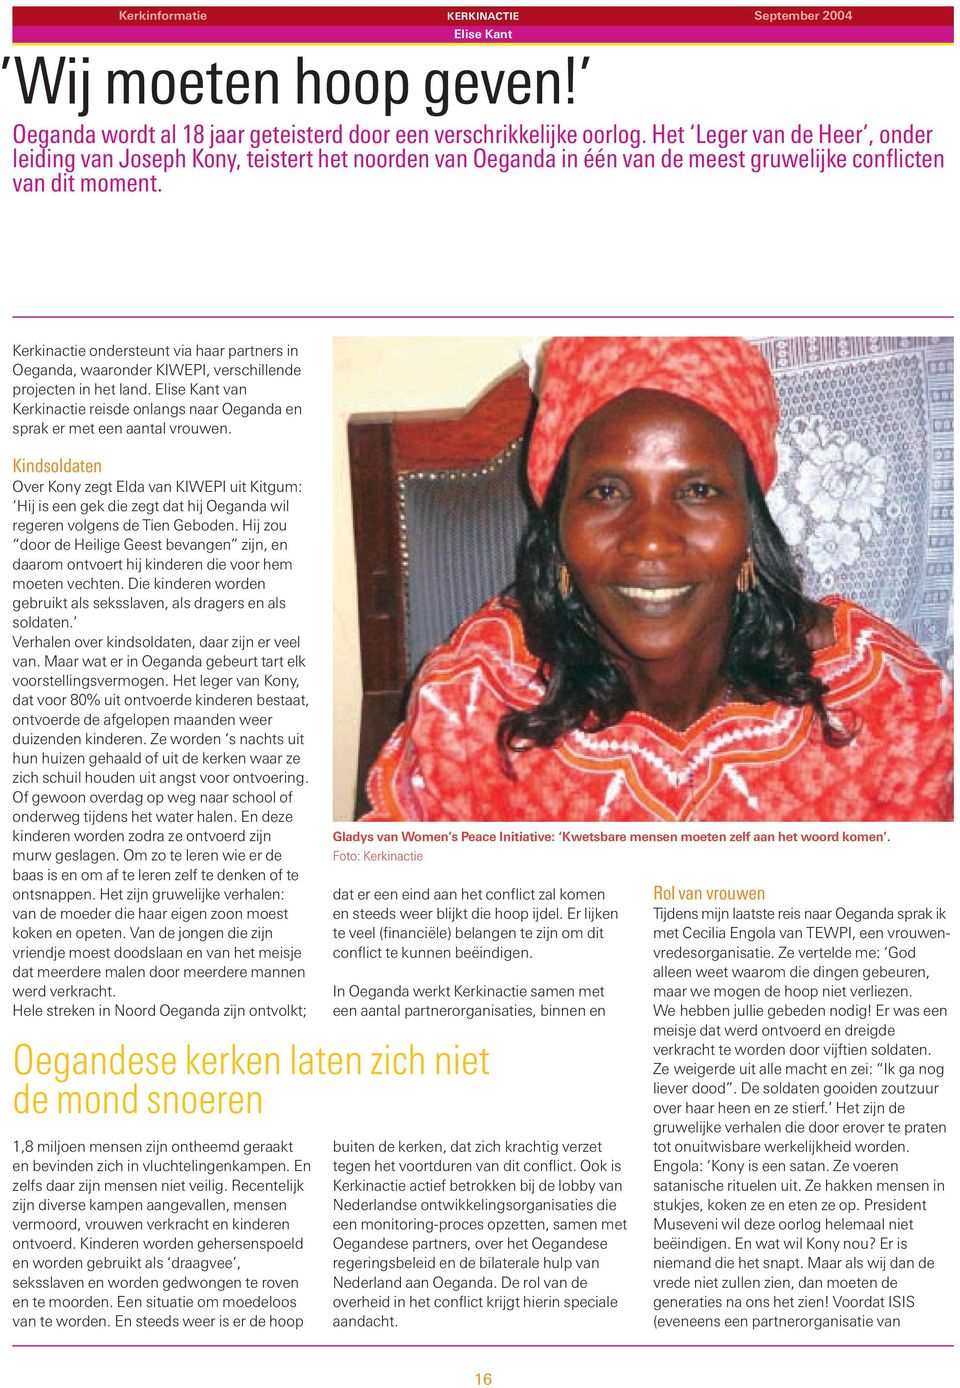 Kerkinactie ondersteunt via haar partners in Oeganda, waaronder KIWEPI, verschillende projecten in het land. Elise Kant van Kerkinactie reisde onlangs naar Oeganda en sprak er met een aantal vrouwen.